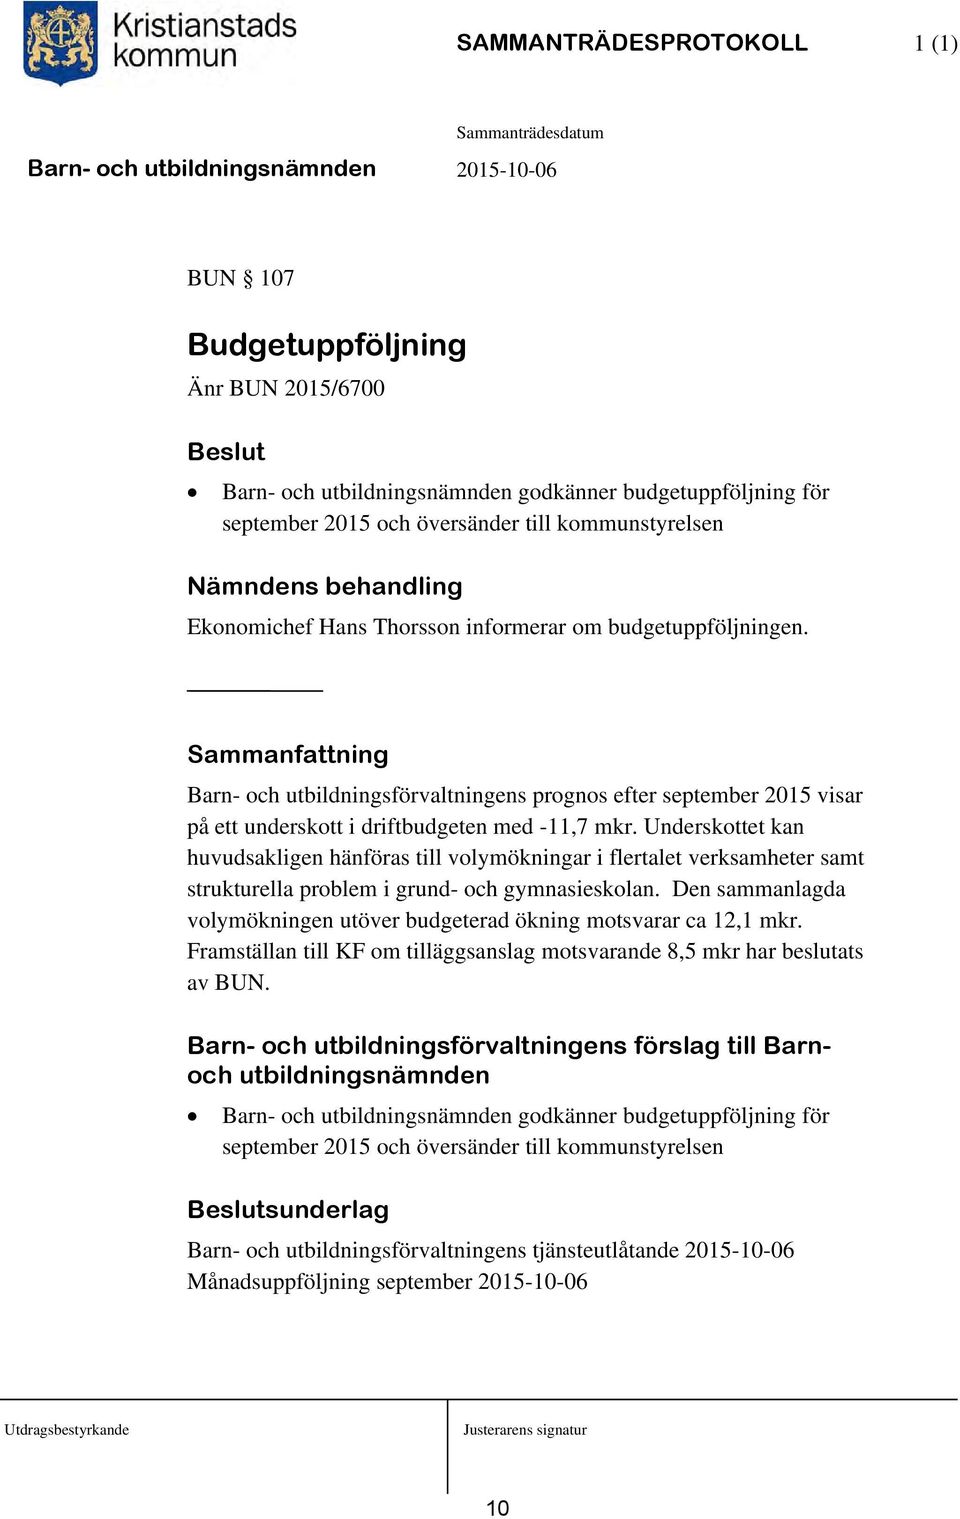 Sammanfattning Barn- och utbildningsförvaltningens prognos efter september 2015 visar på ett underskott i driftbudgeten med -11,7 mkr.